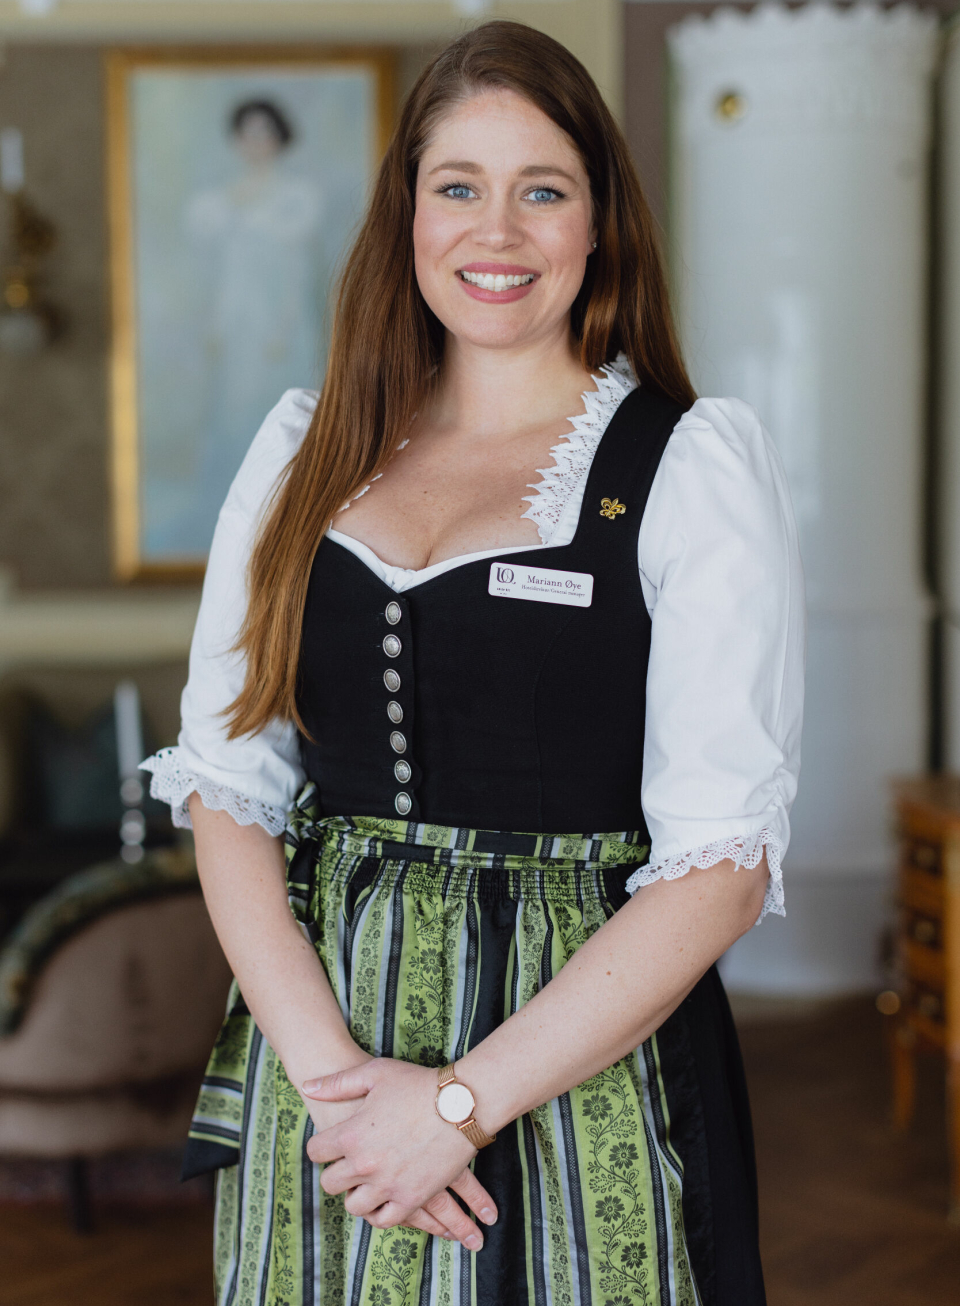 SMØRBLID: Hotelldirektør Mariann Øye ha vært på hotellet siden hun var barn, og har sittet i direktørstolen i 15 år.